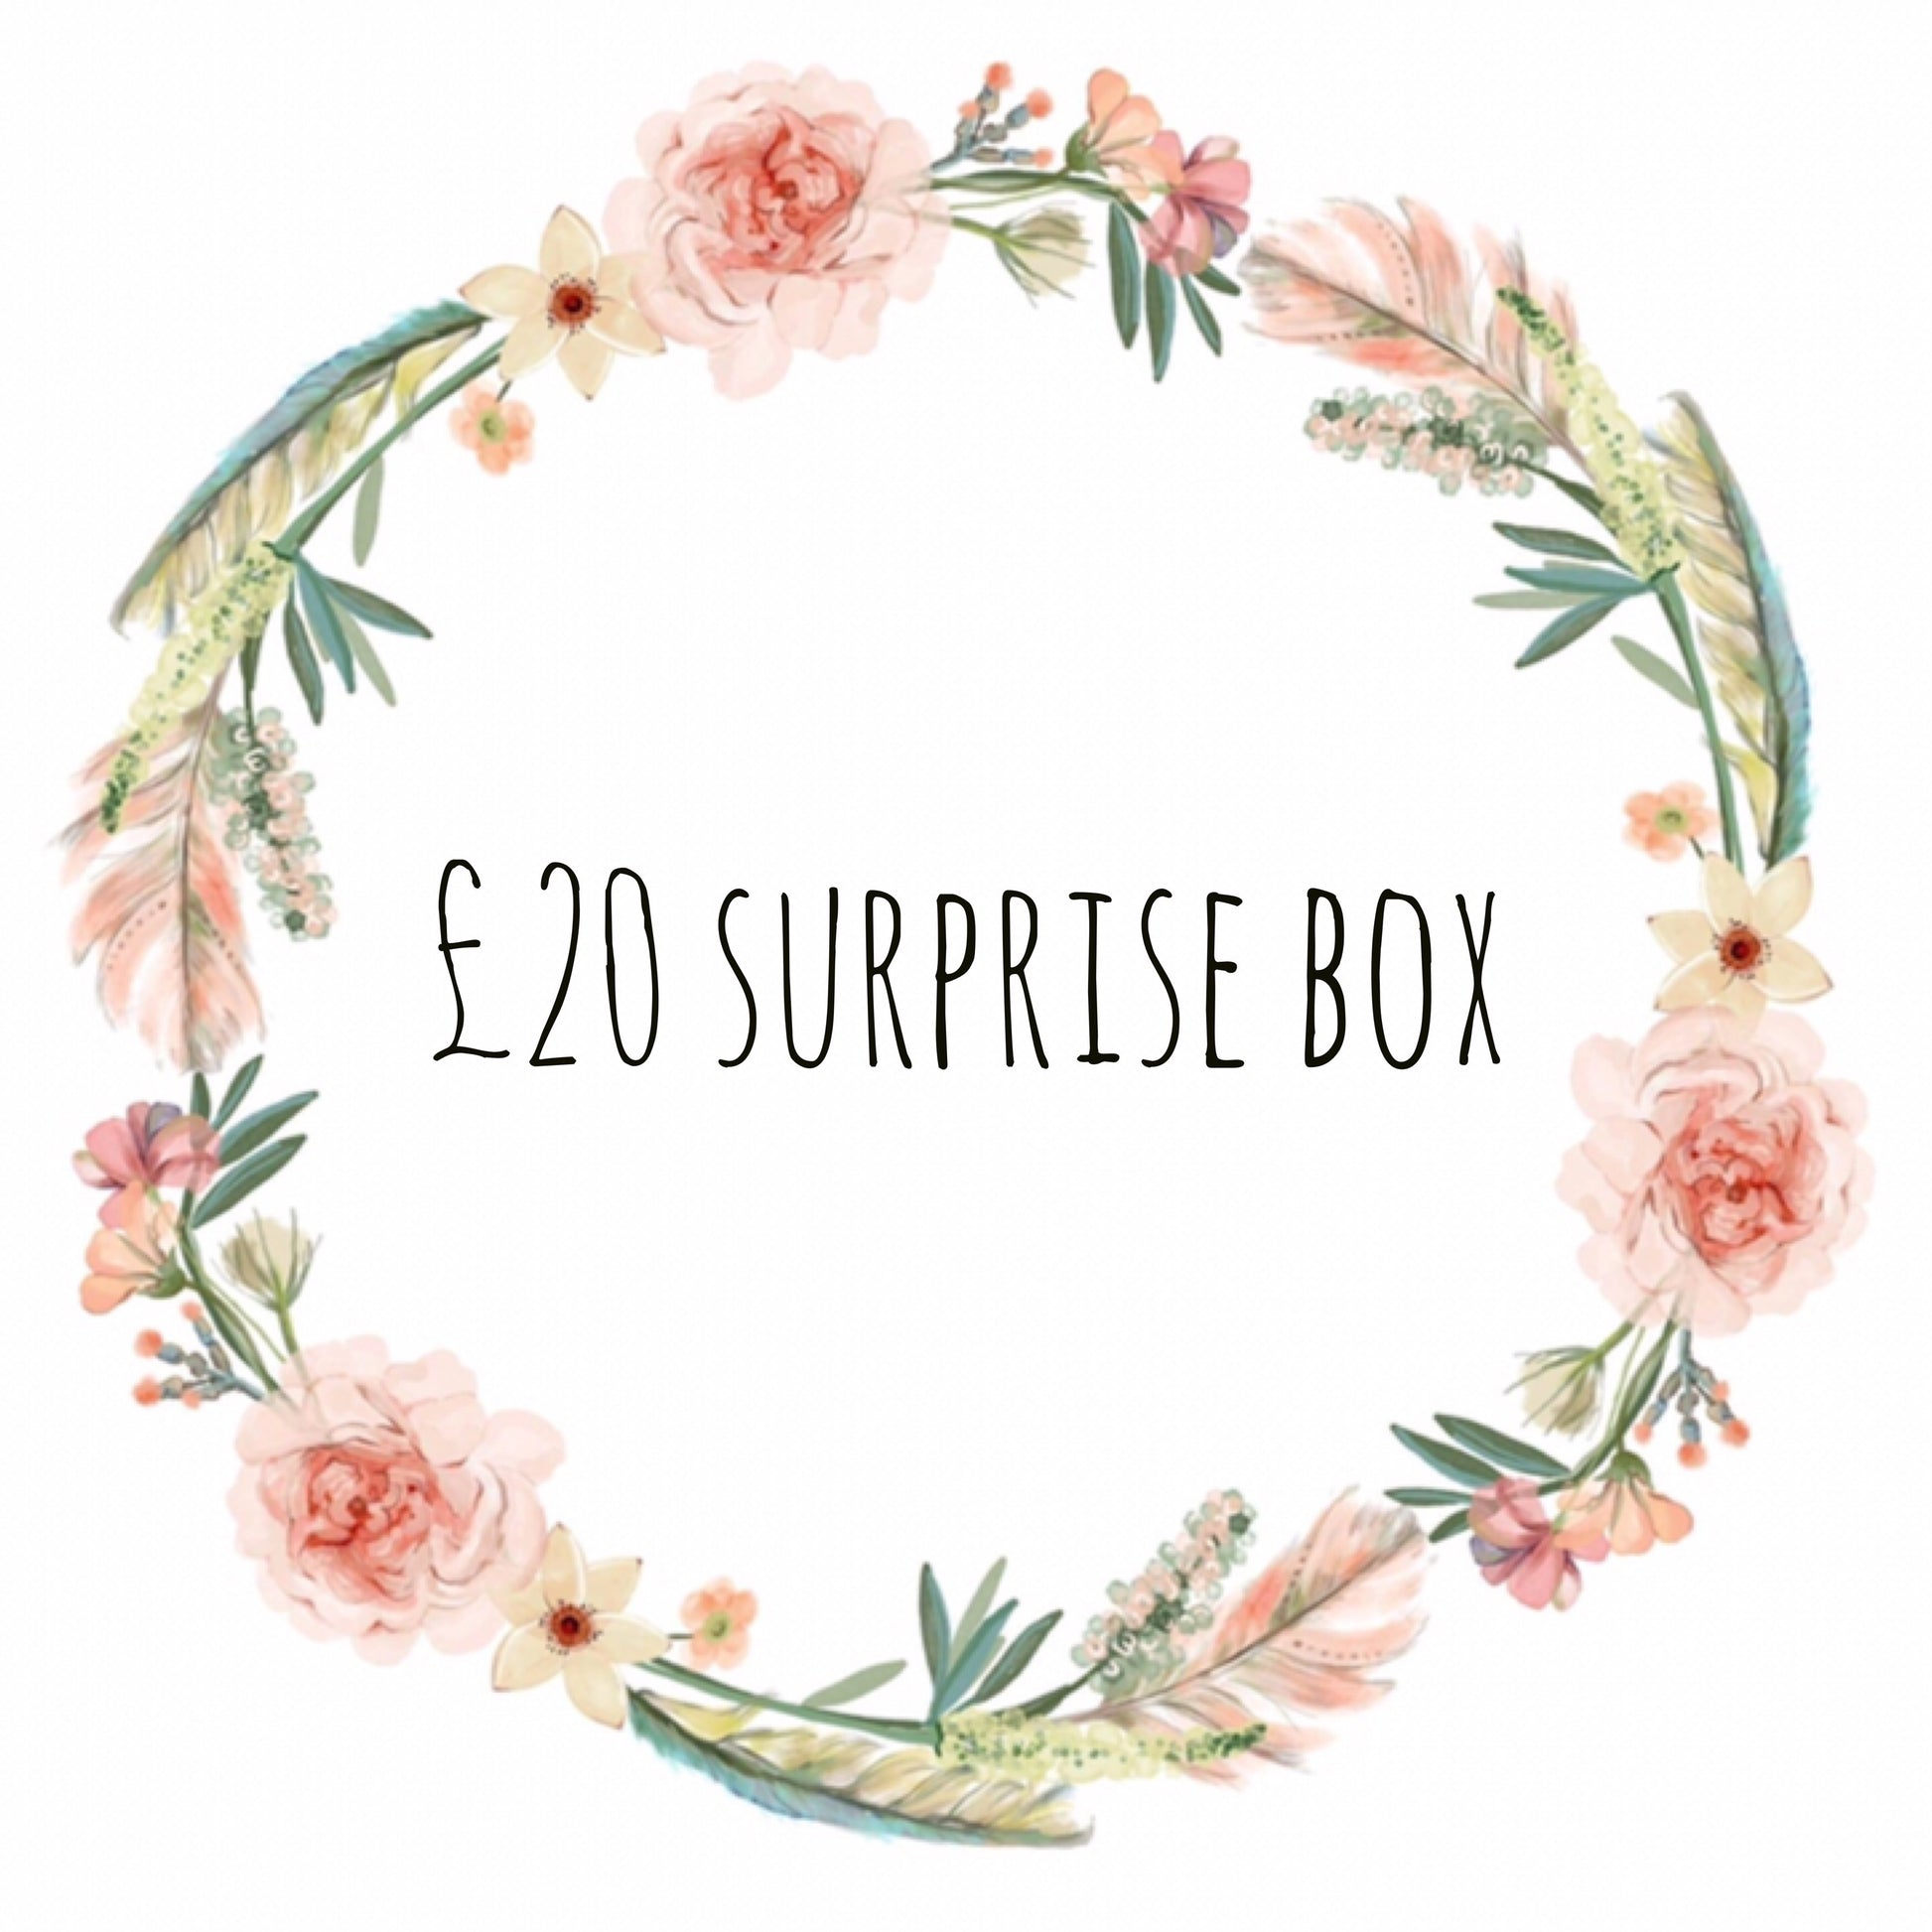 £20 surprise box (1943502389313)